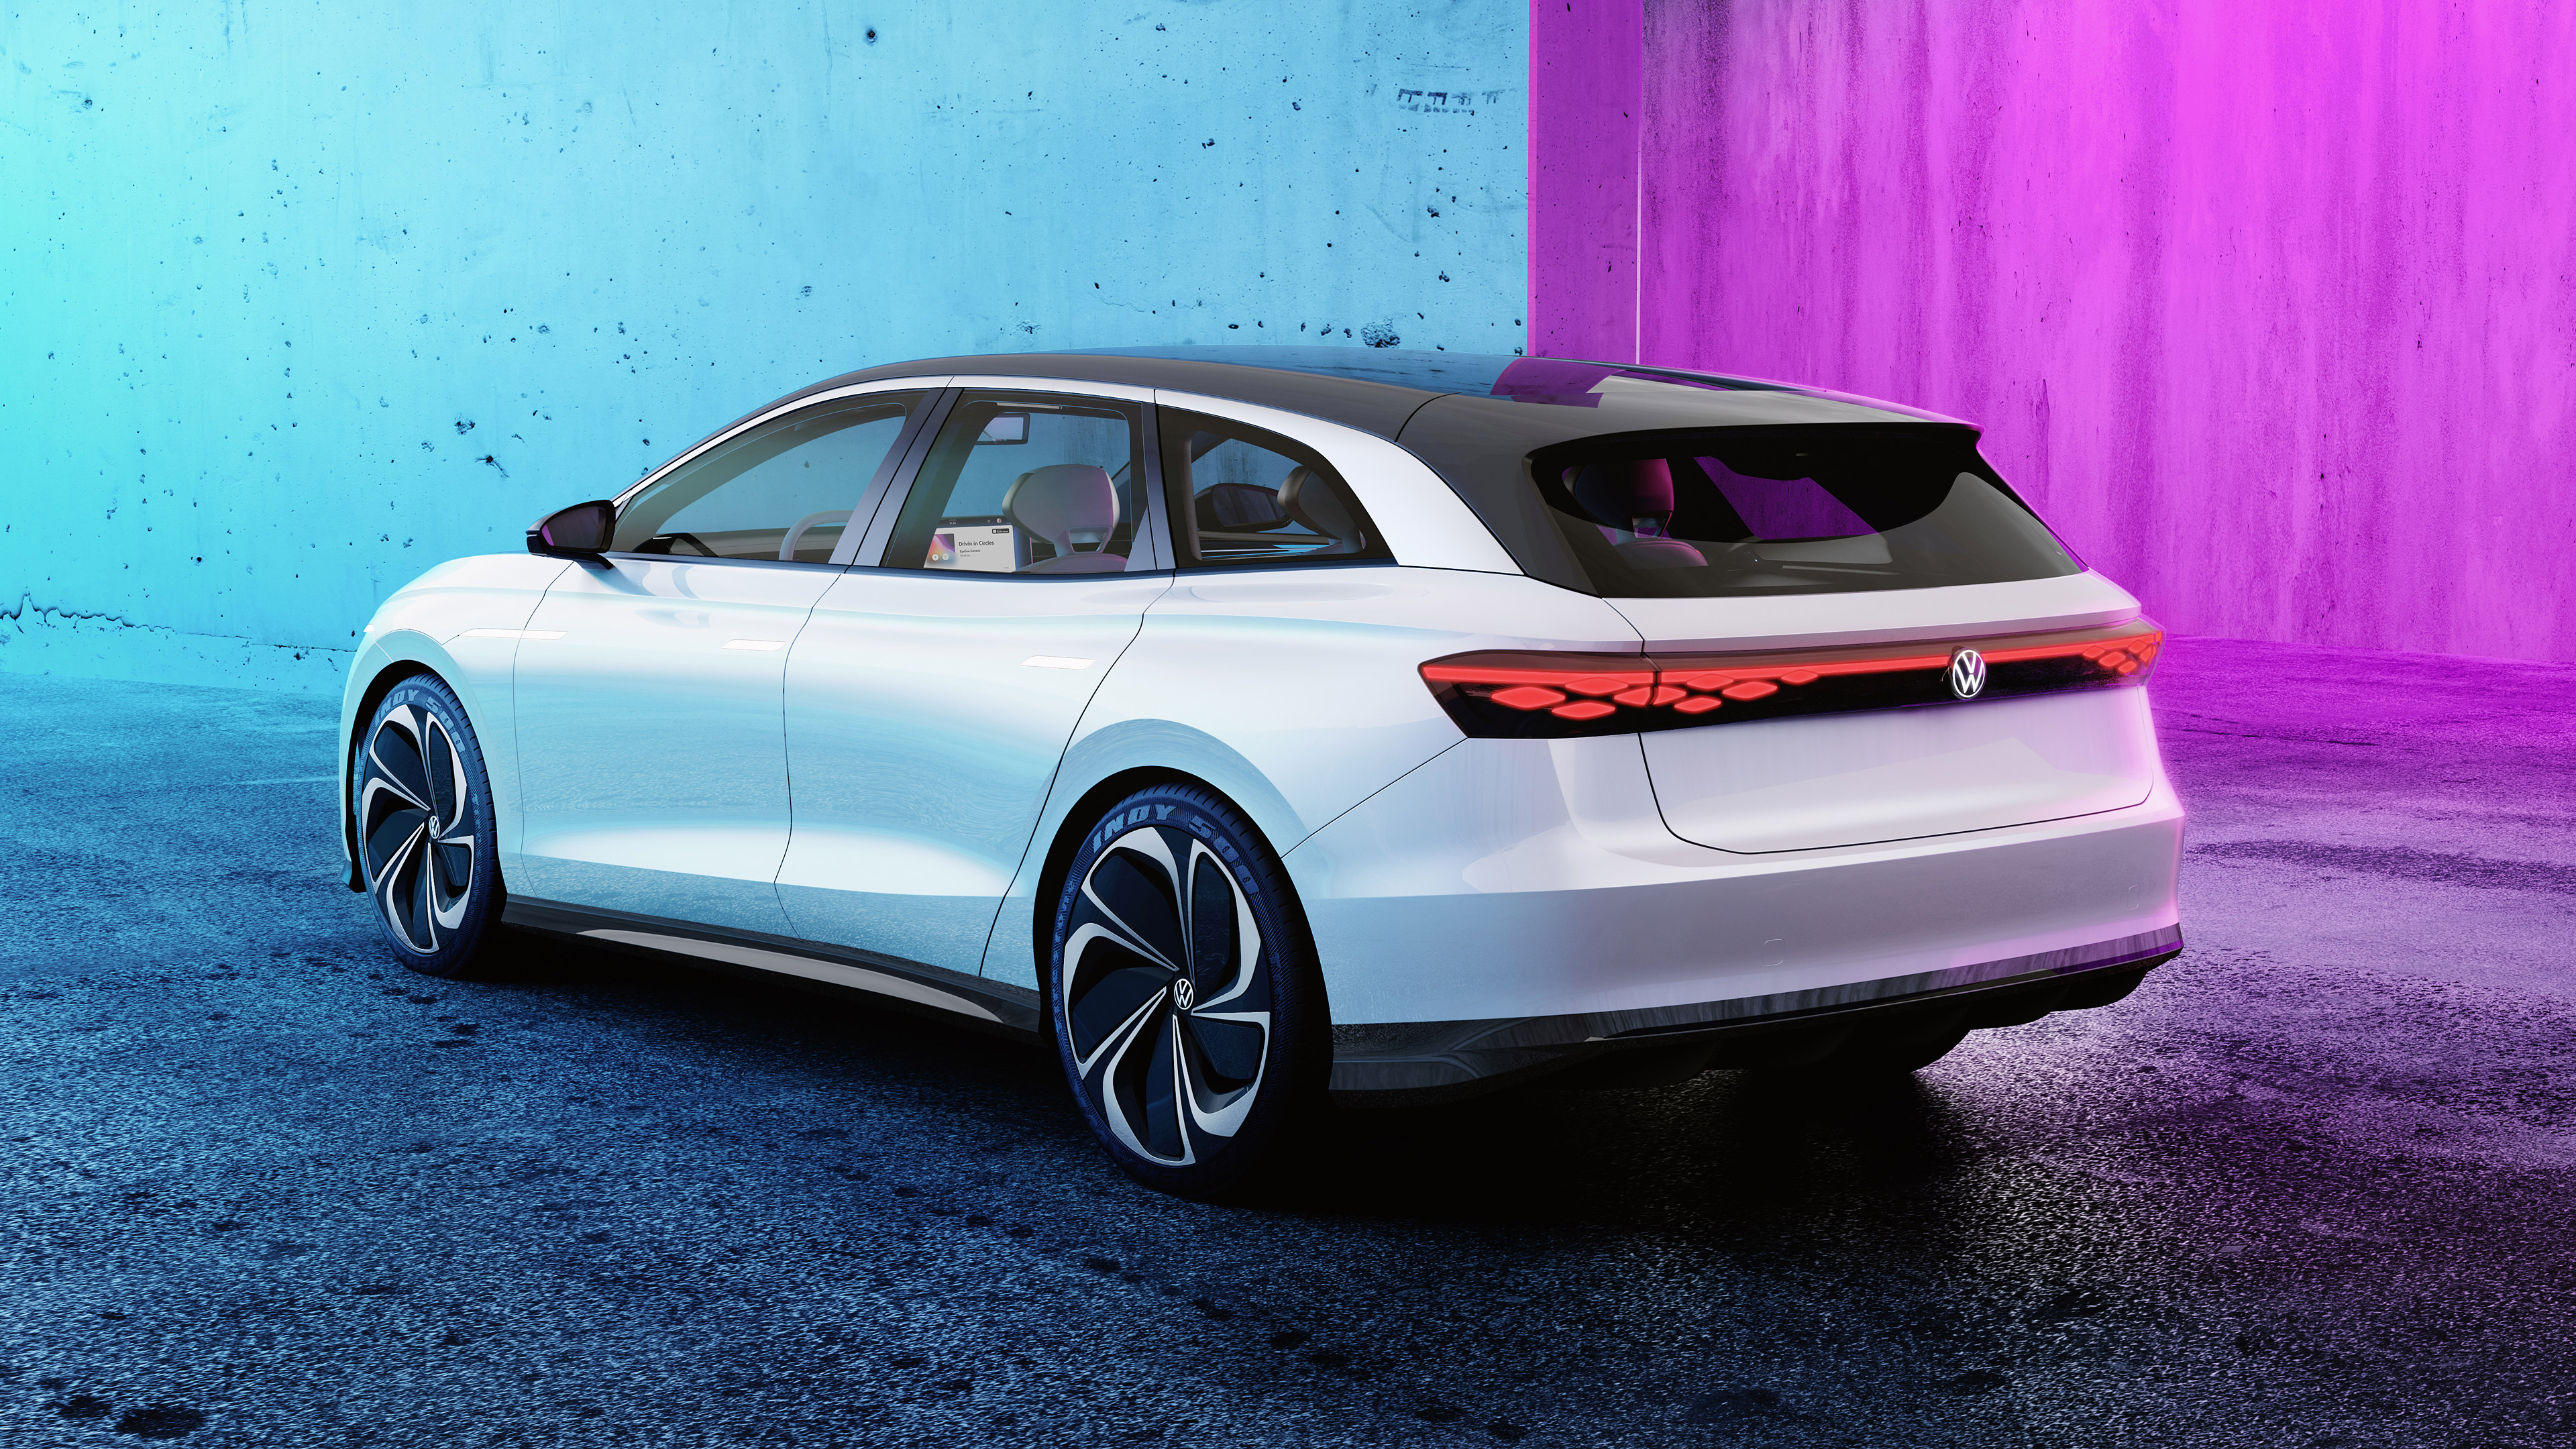  2019 Volkswagen ID Space Vizzion Concept Wallpaper.